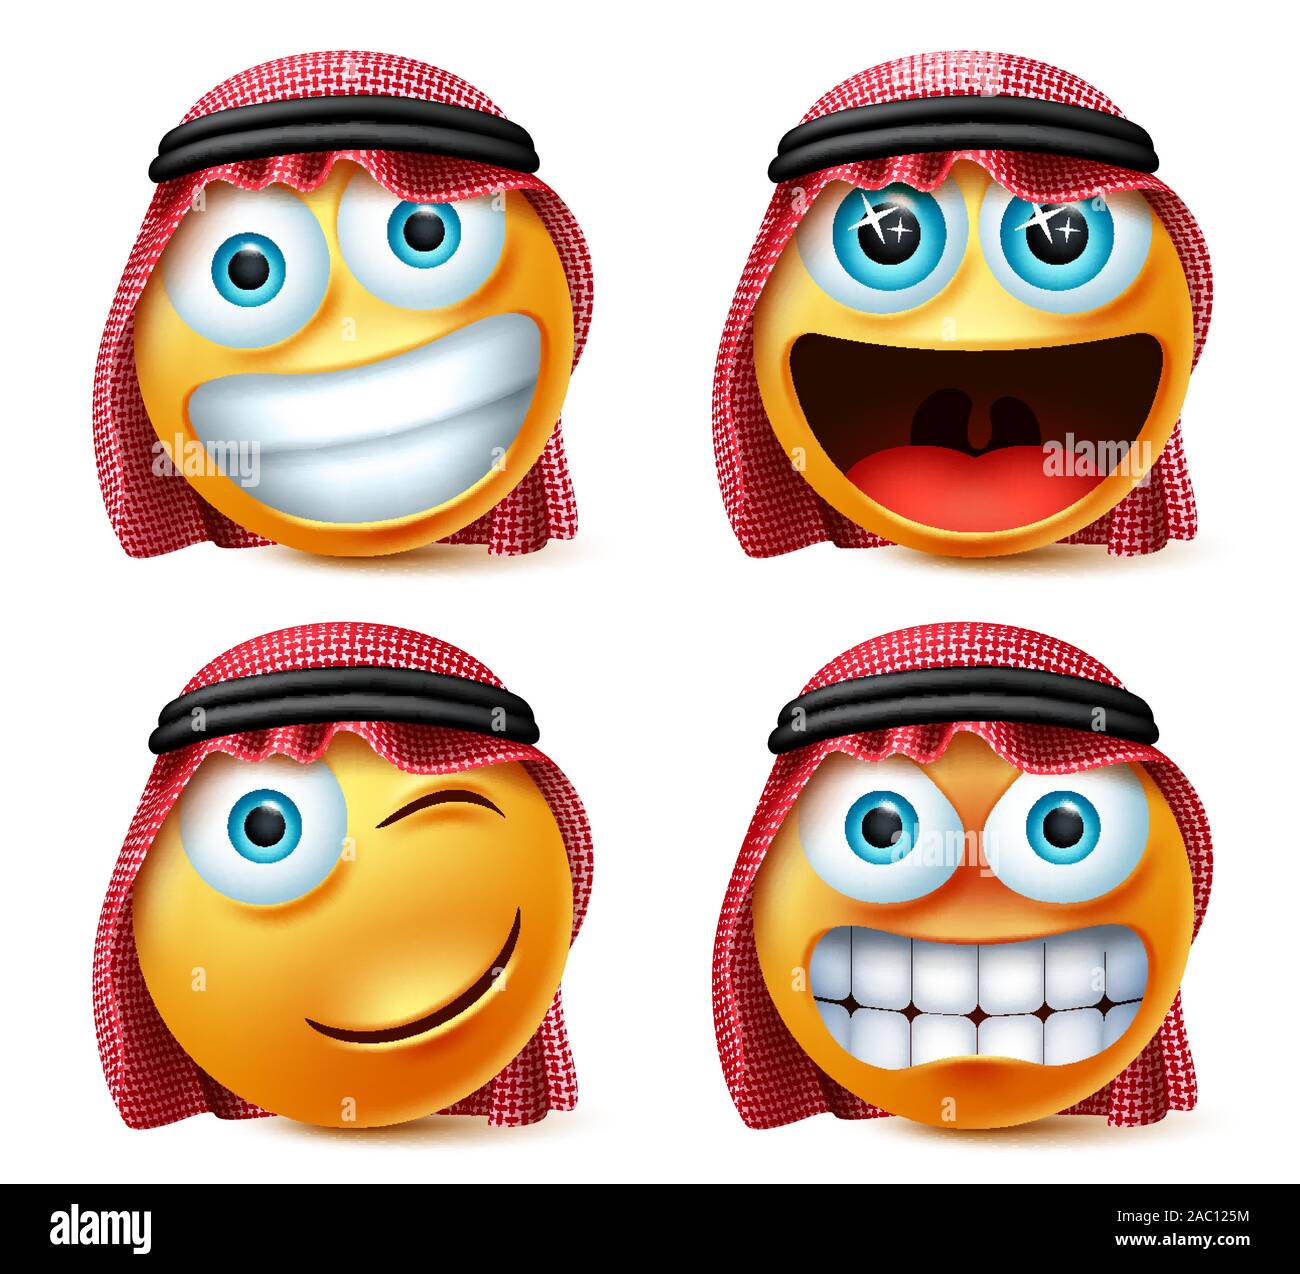 Arabia arabo vettore emojis set. Arabo Saudita emoticon o Smiley face in eccitati, arrabbiato e naughty espressione indossando agal ghutra e isolato in bianco. Illustrazione Vettoriale